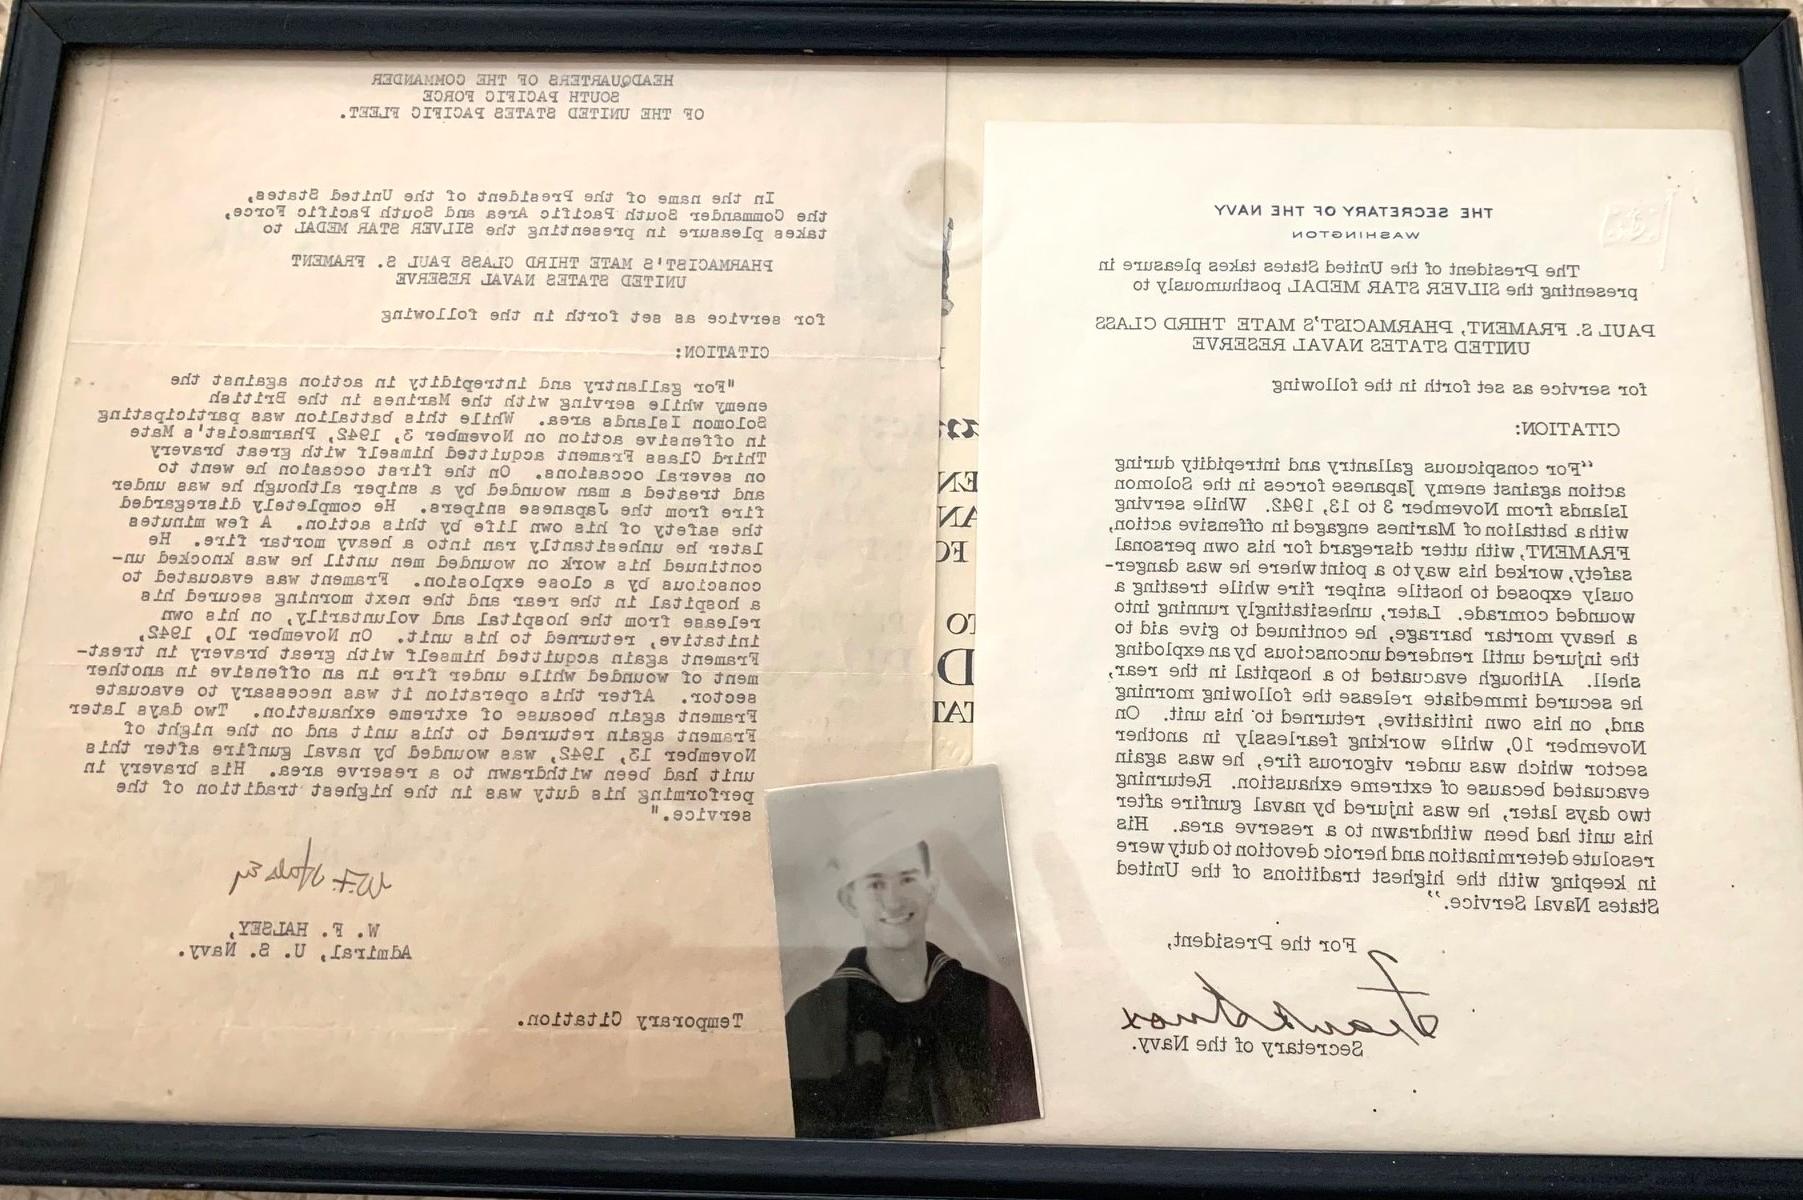 ACPHS校友保罗·斯坦利·弗雷特的照片和他的海军奖状.